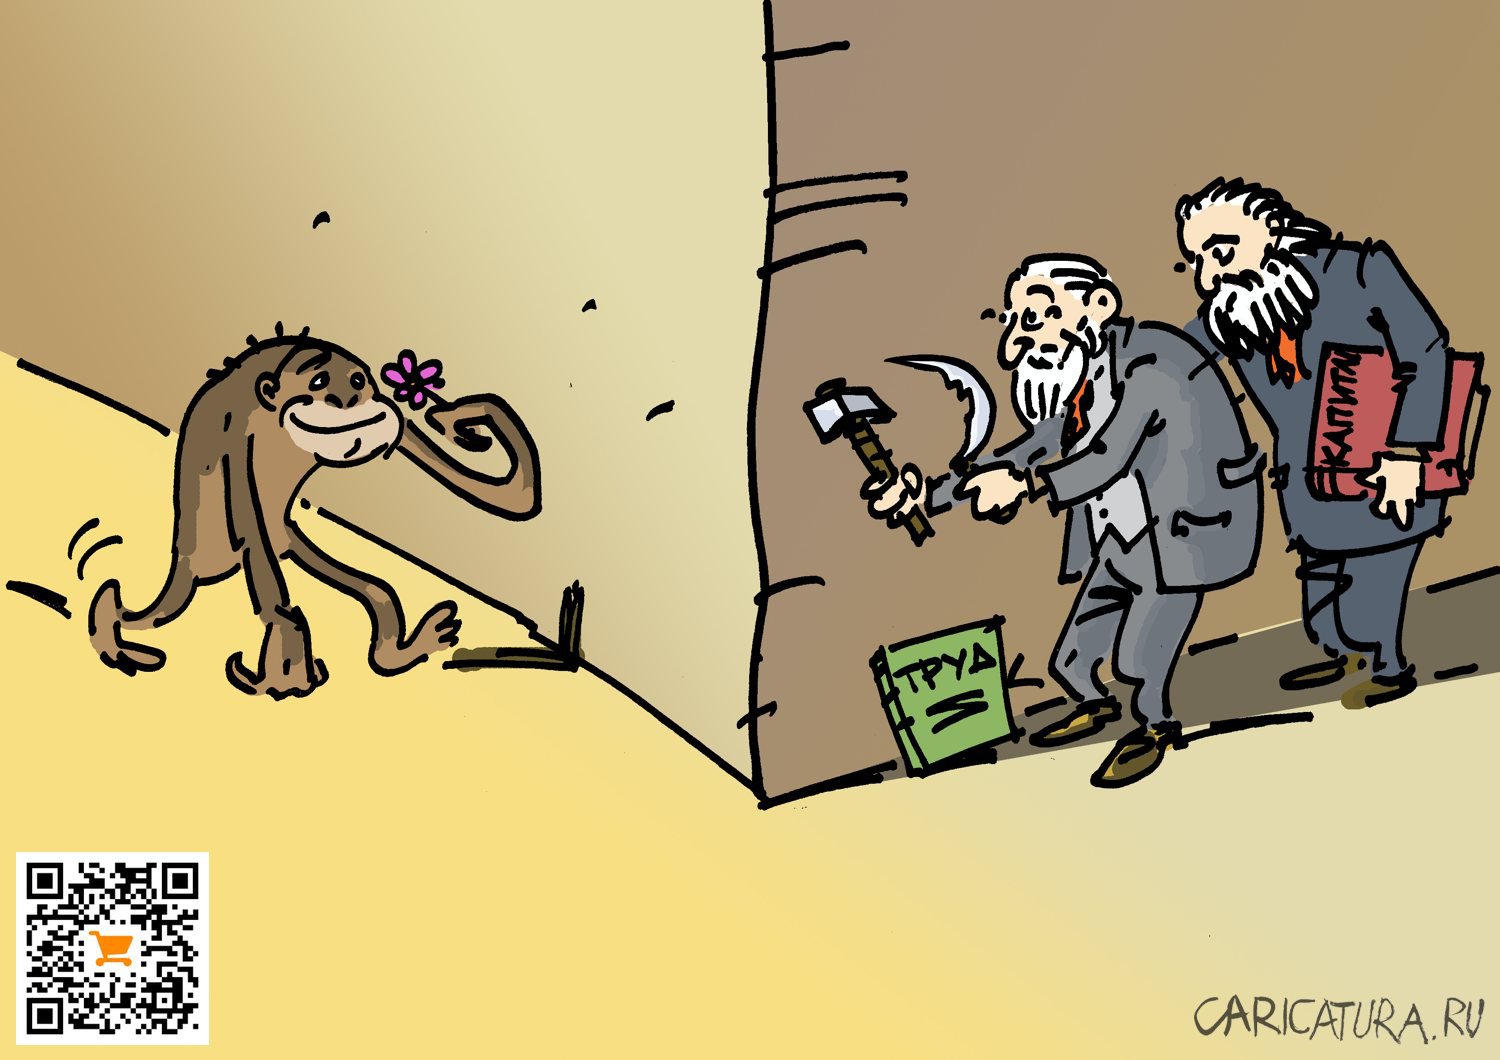 Карикатура "Труд создает из обезьяны человека", Вячеслав Капрельянц